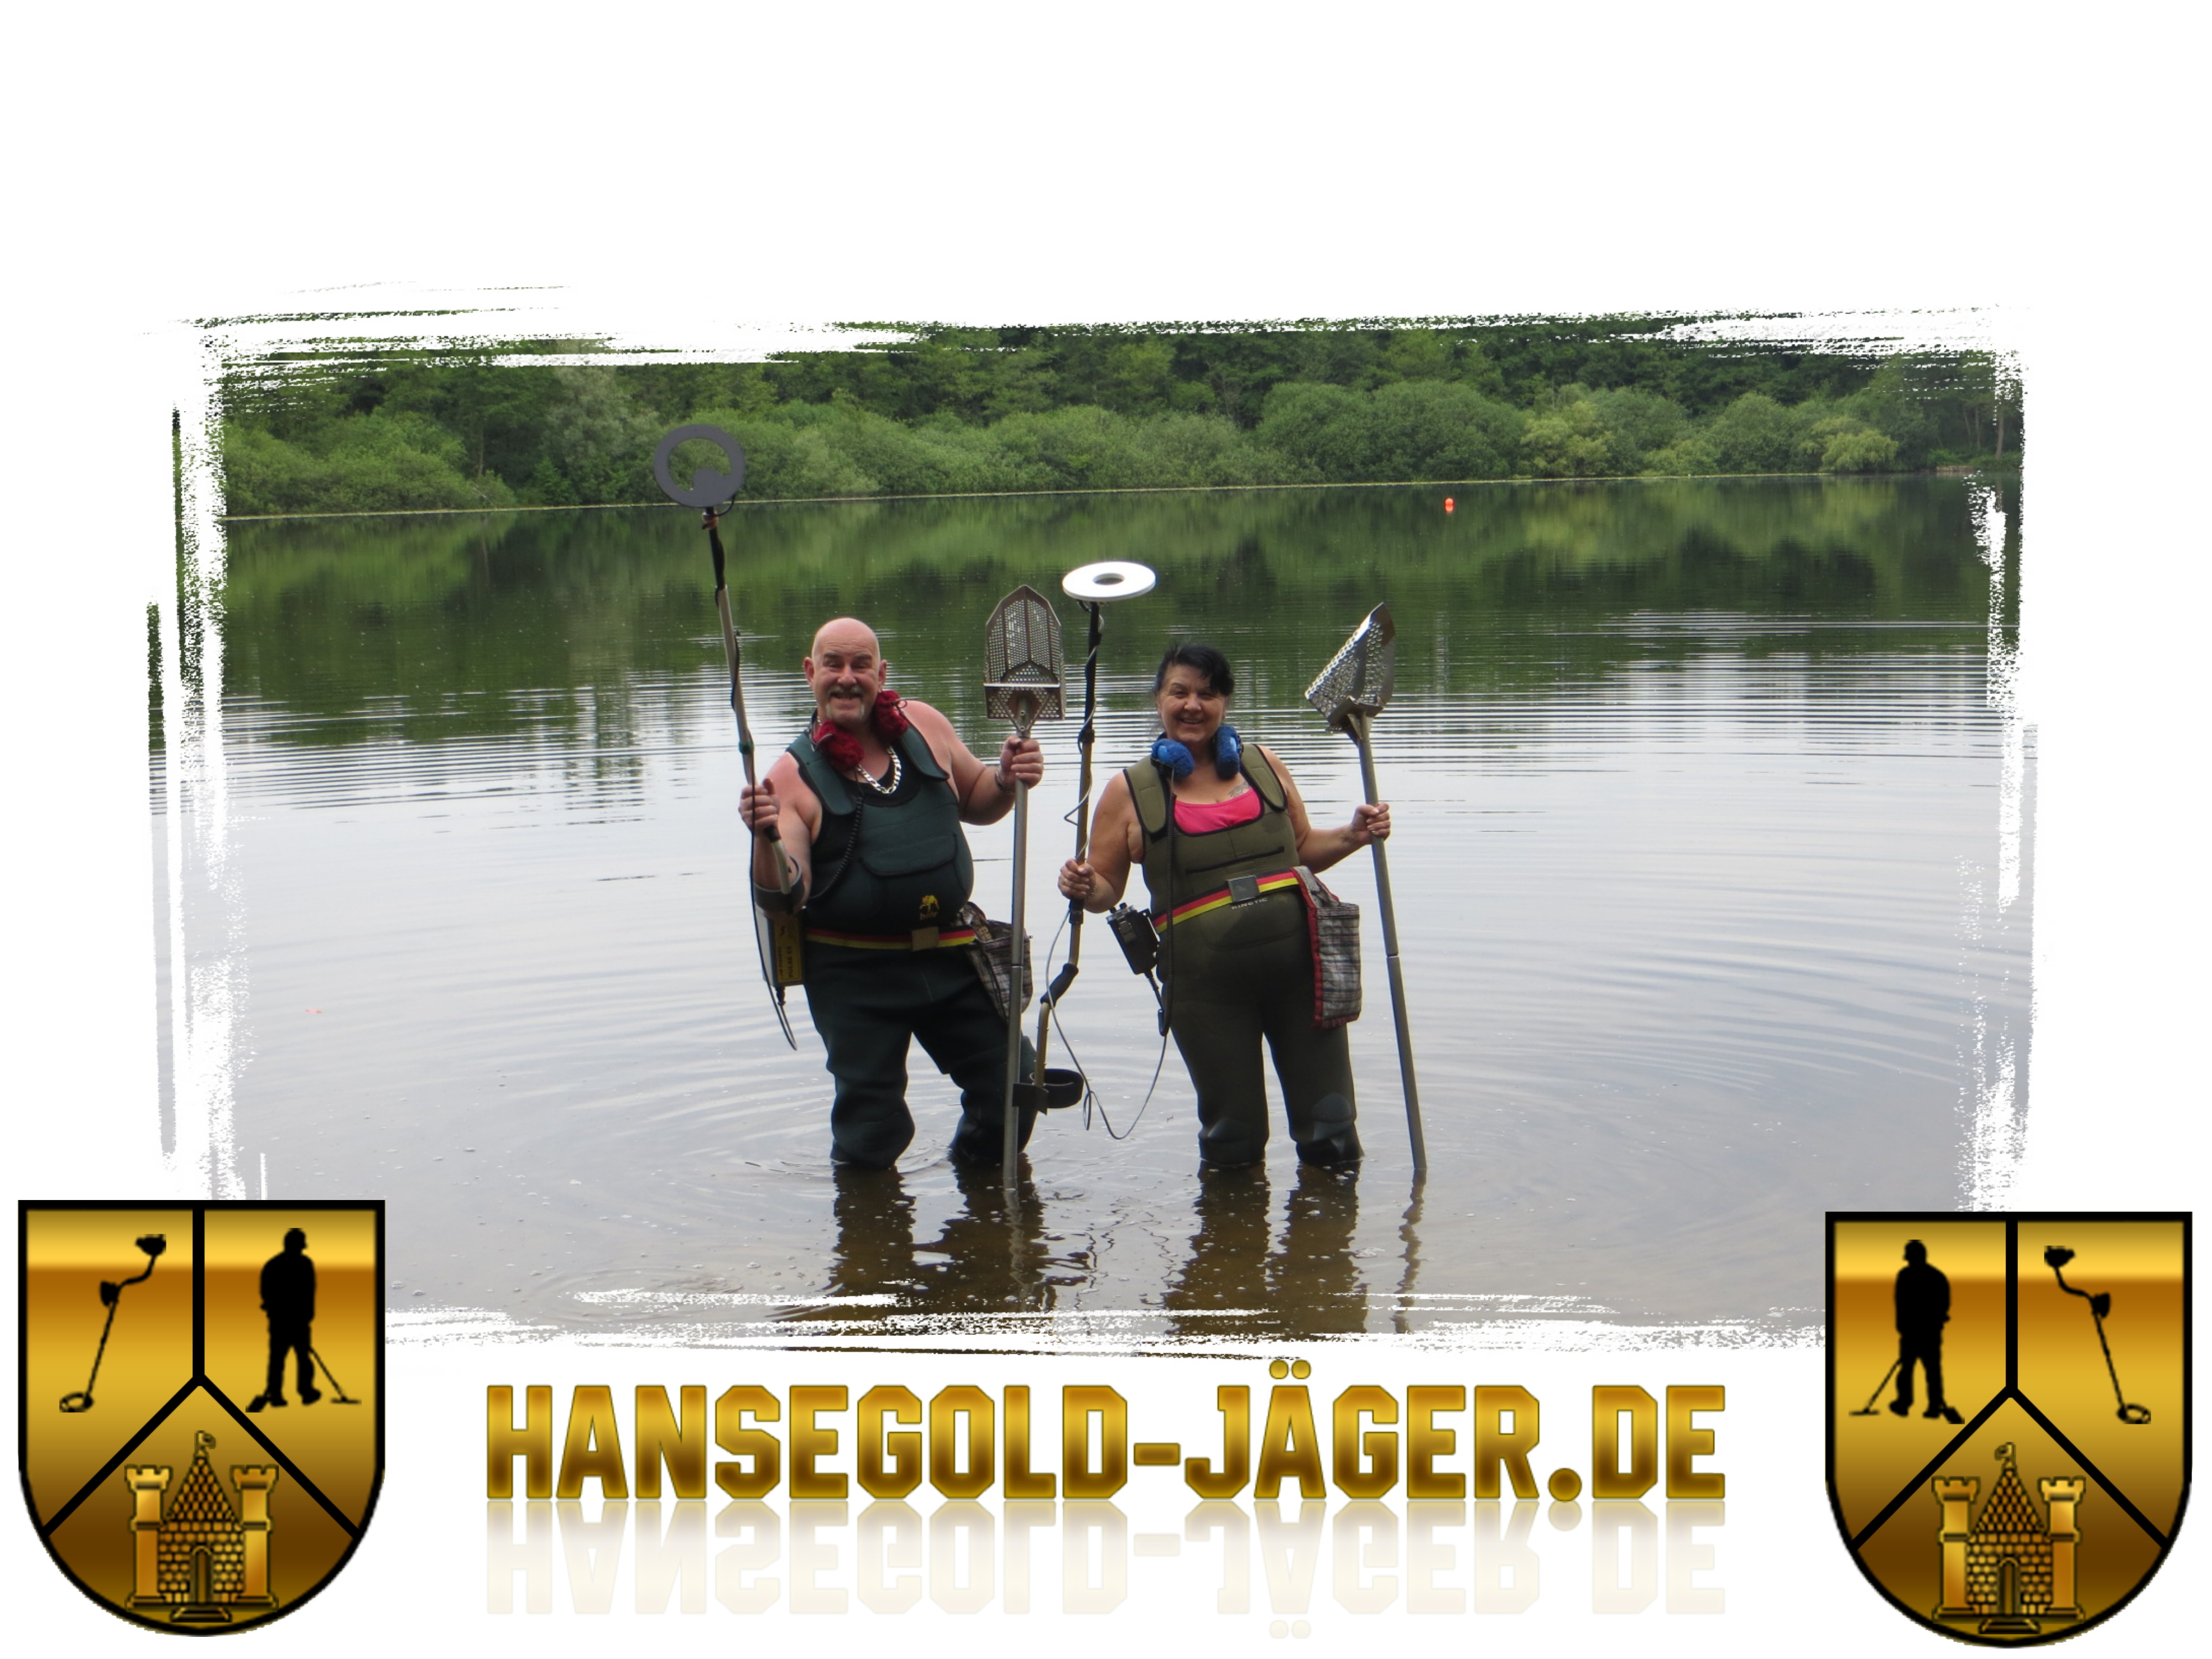 Bild 7 Hansegold-Jäger.de in Hamburg